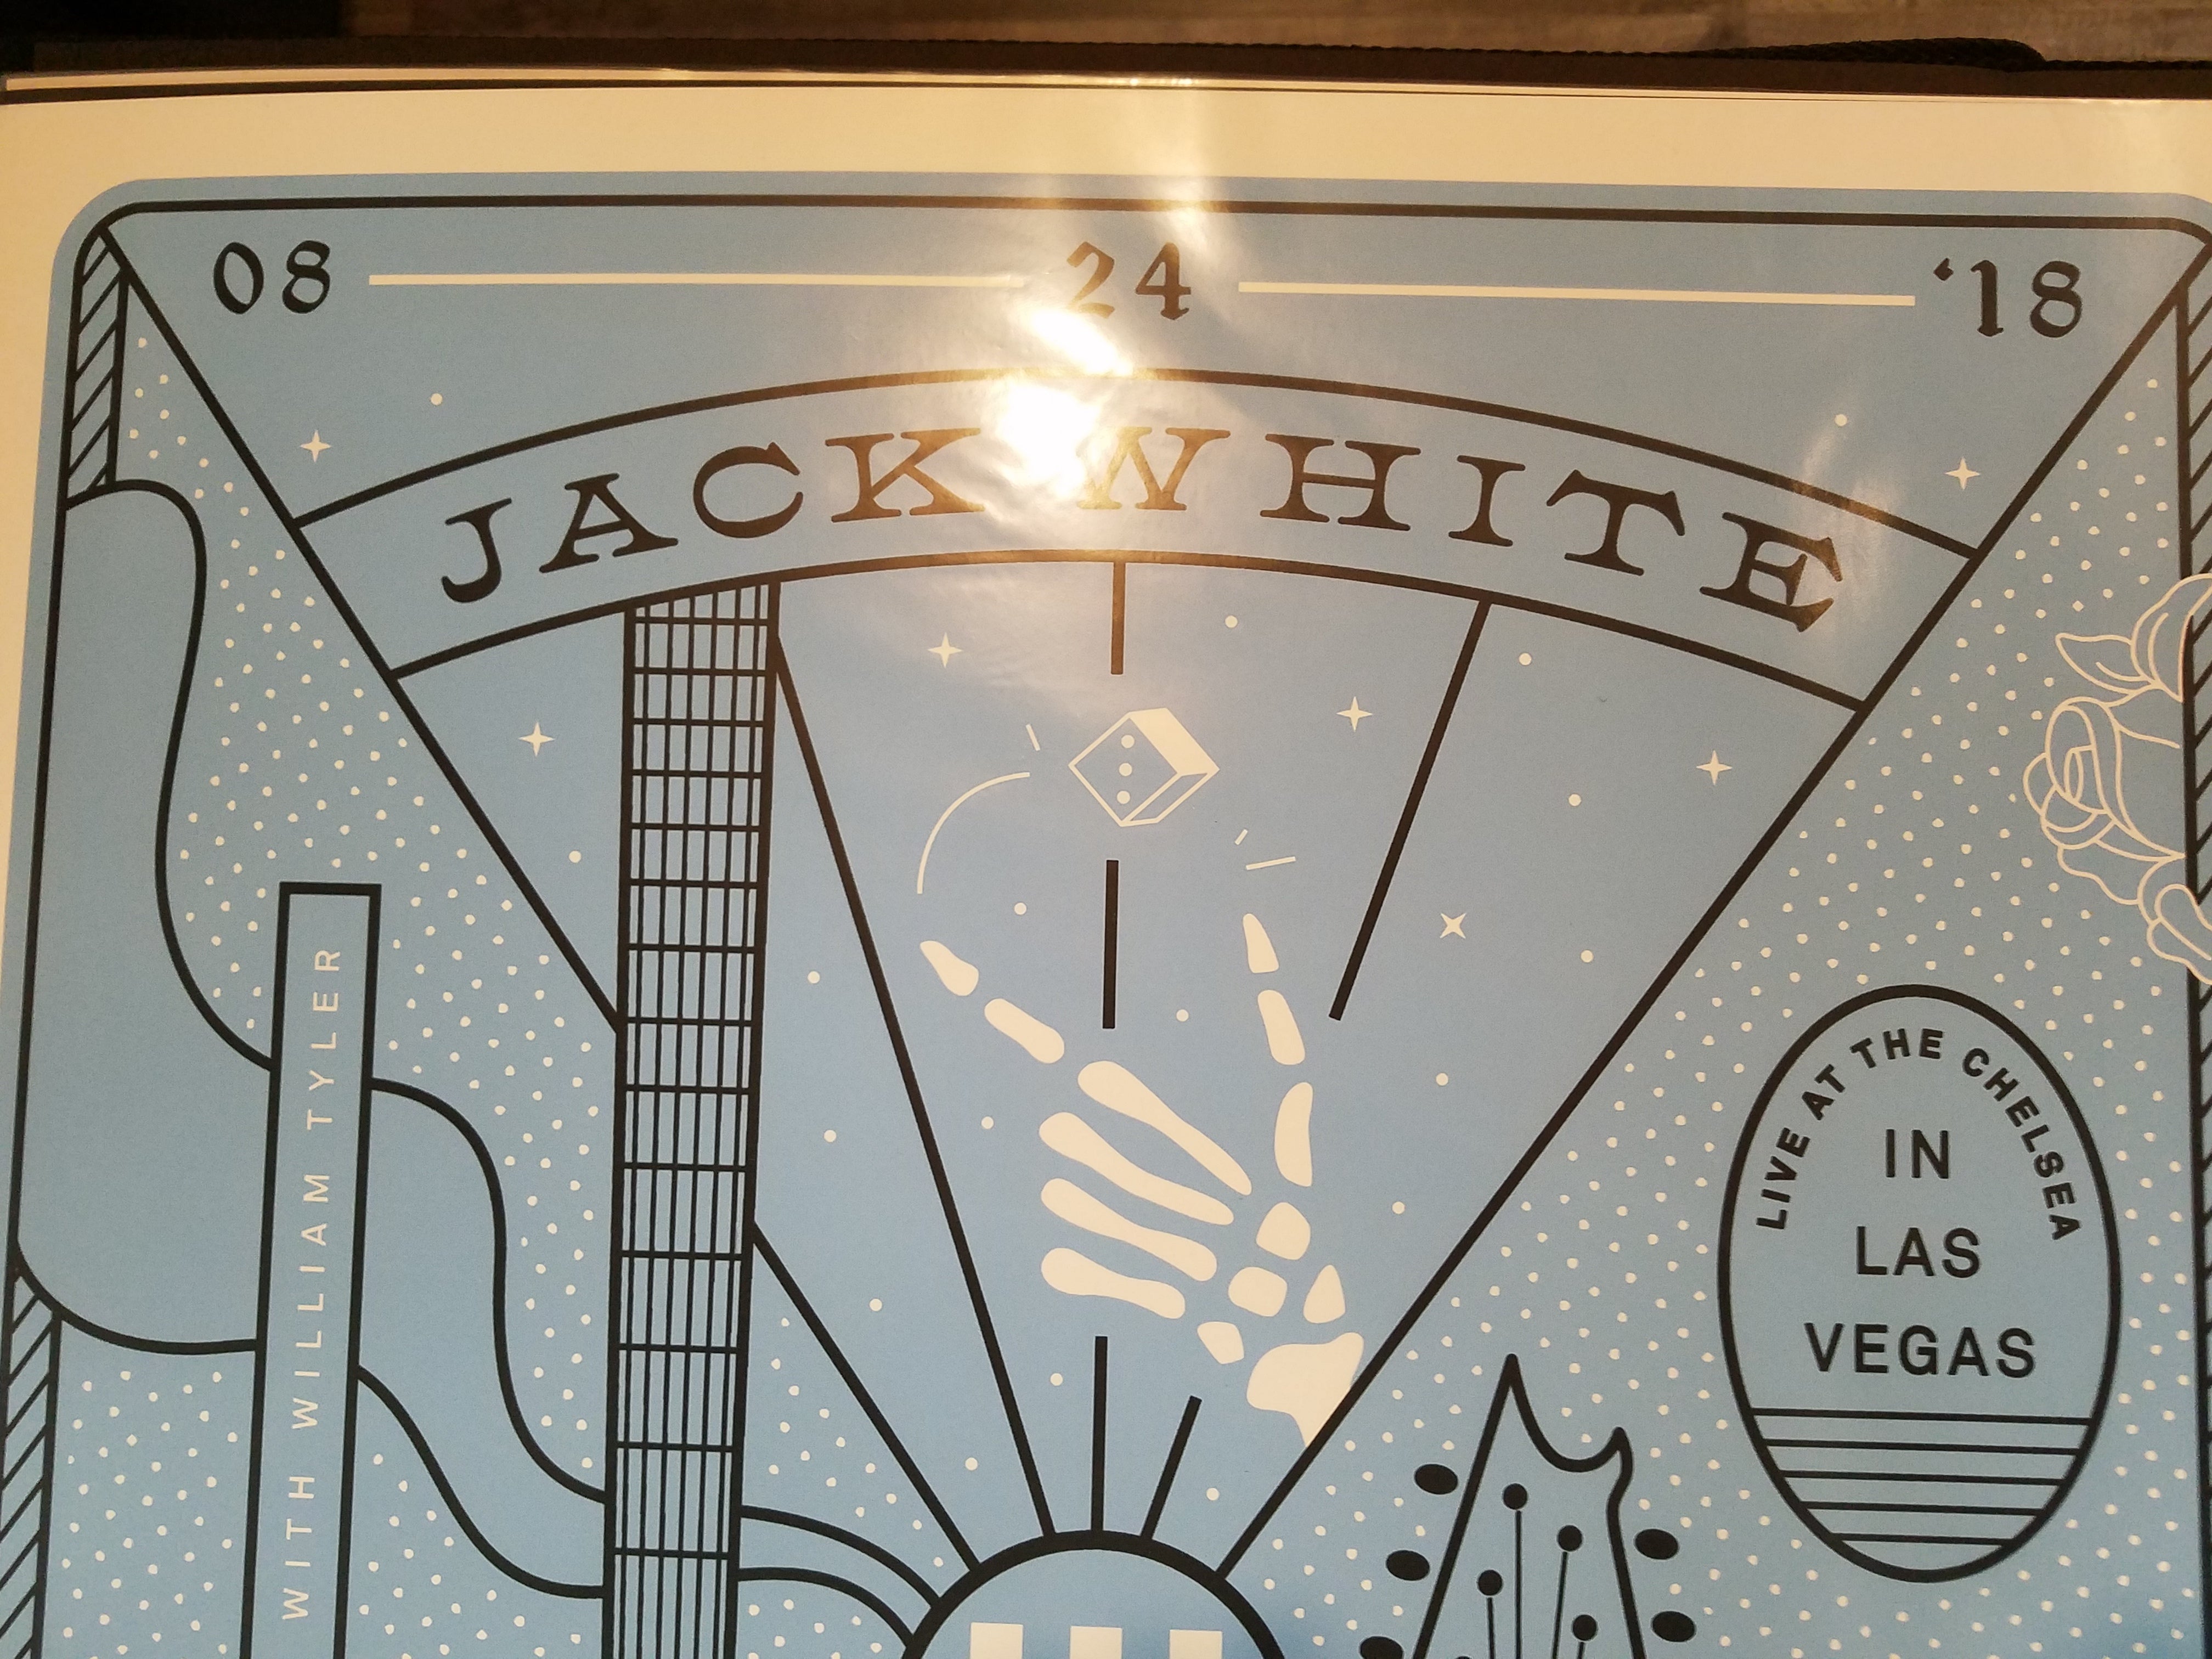 Matthew Jacobson - Jack White Three Diamonds -  8.24.2018 Las Vegas